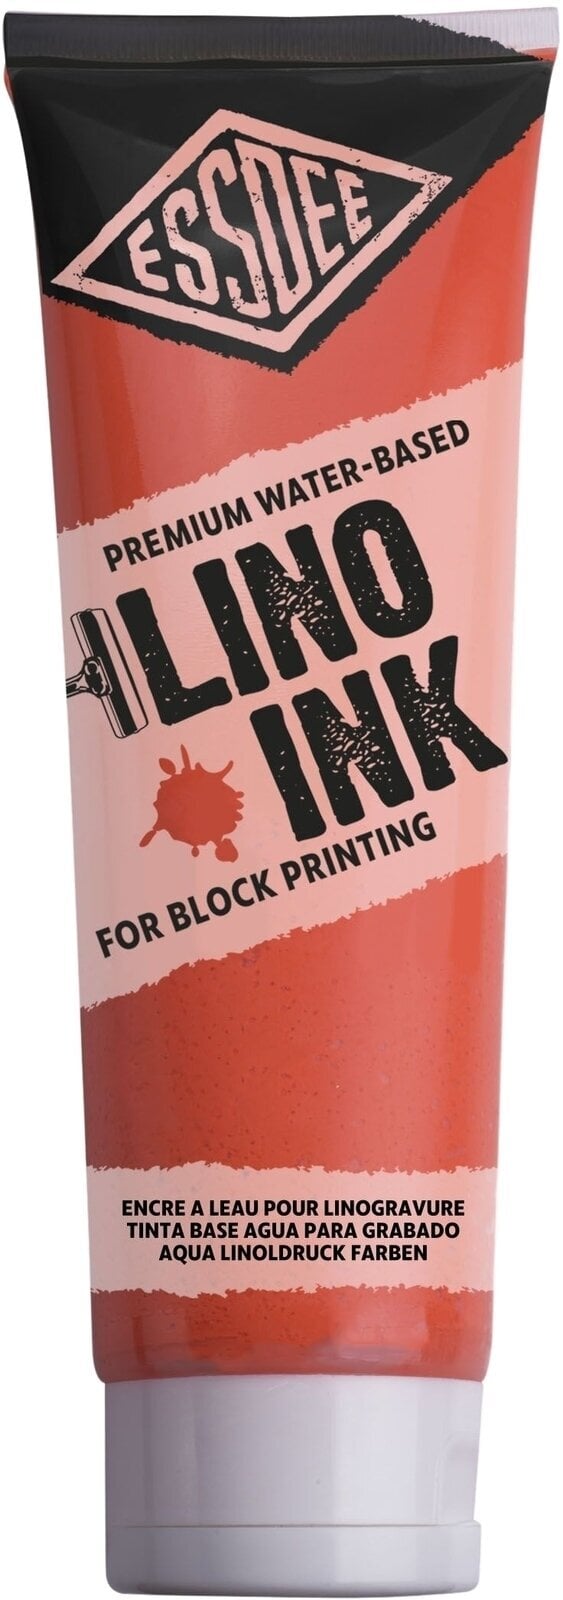 Peintures pour la linogravure Essdee Block Printing Ink Peintures pour la linogravure Fluorescent Orange 300 ml